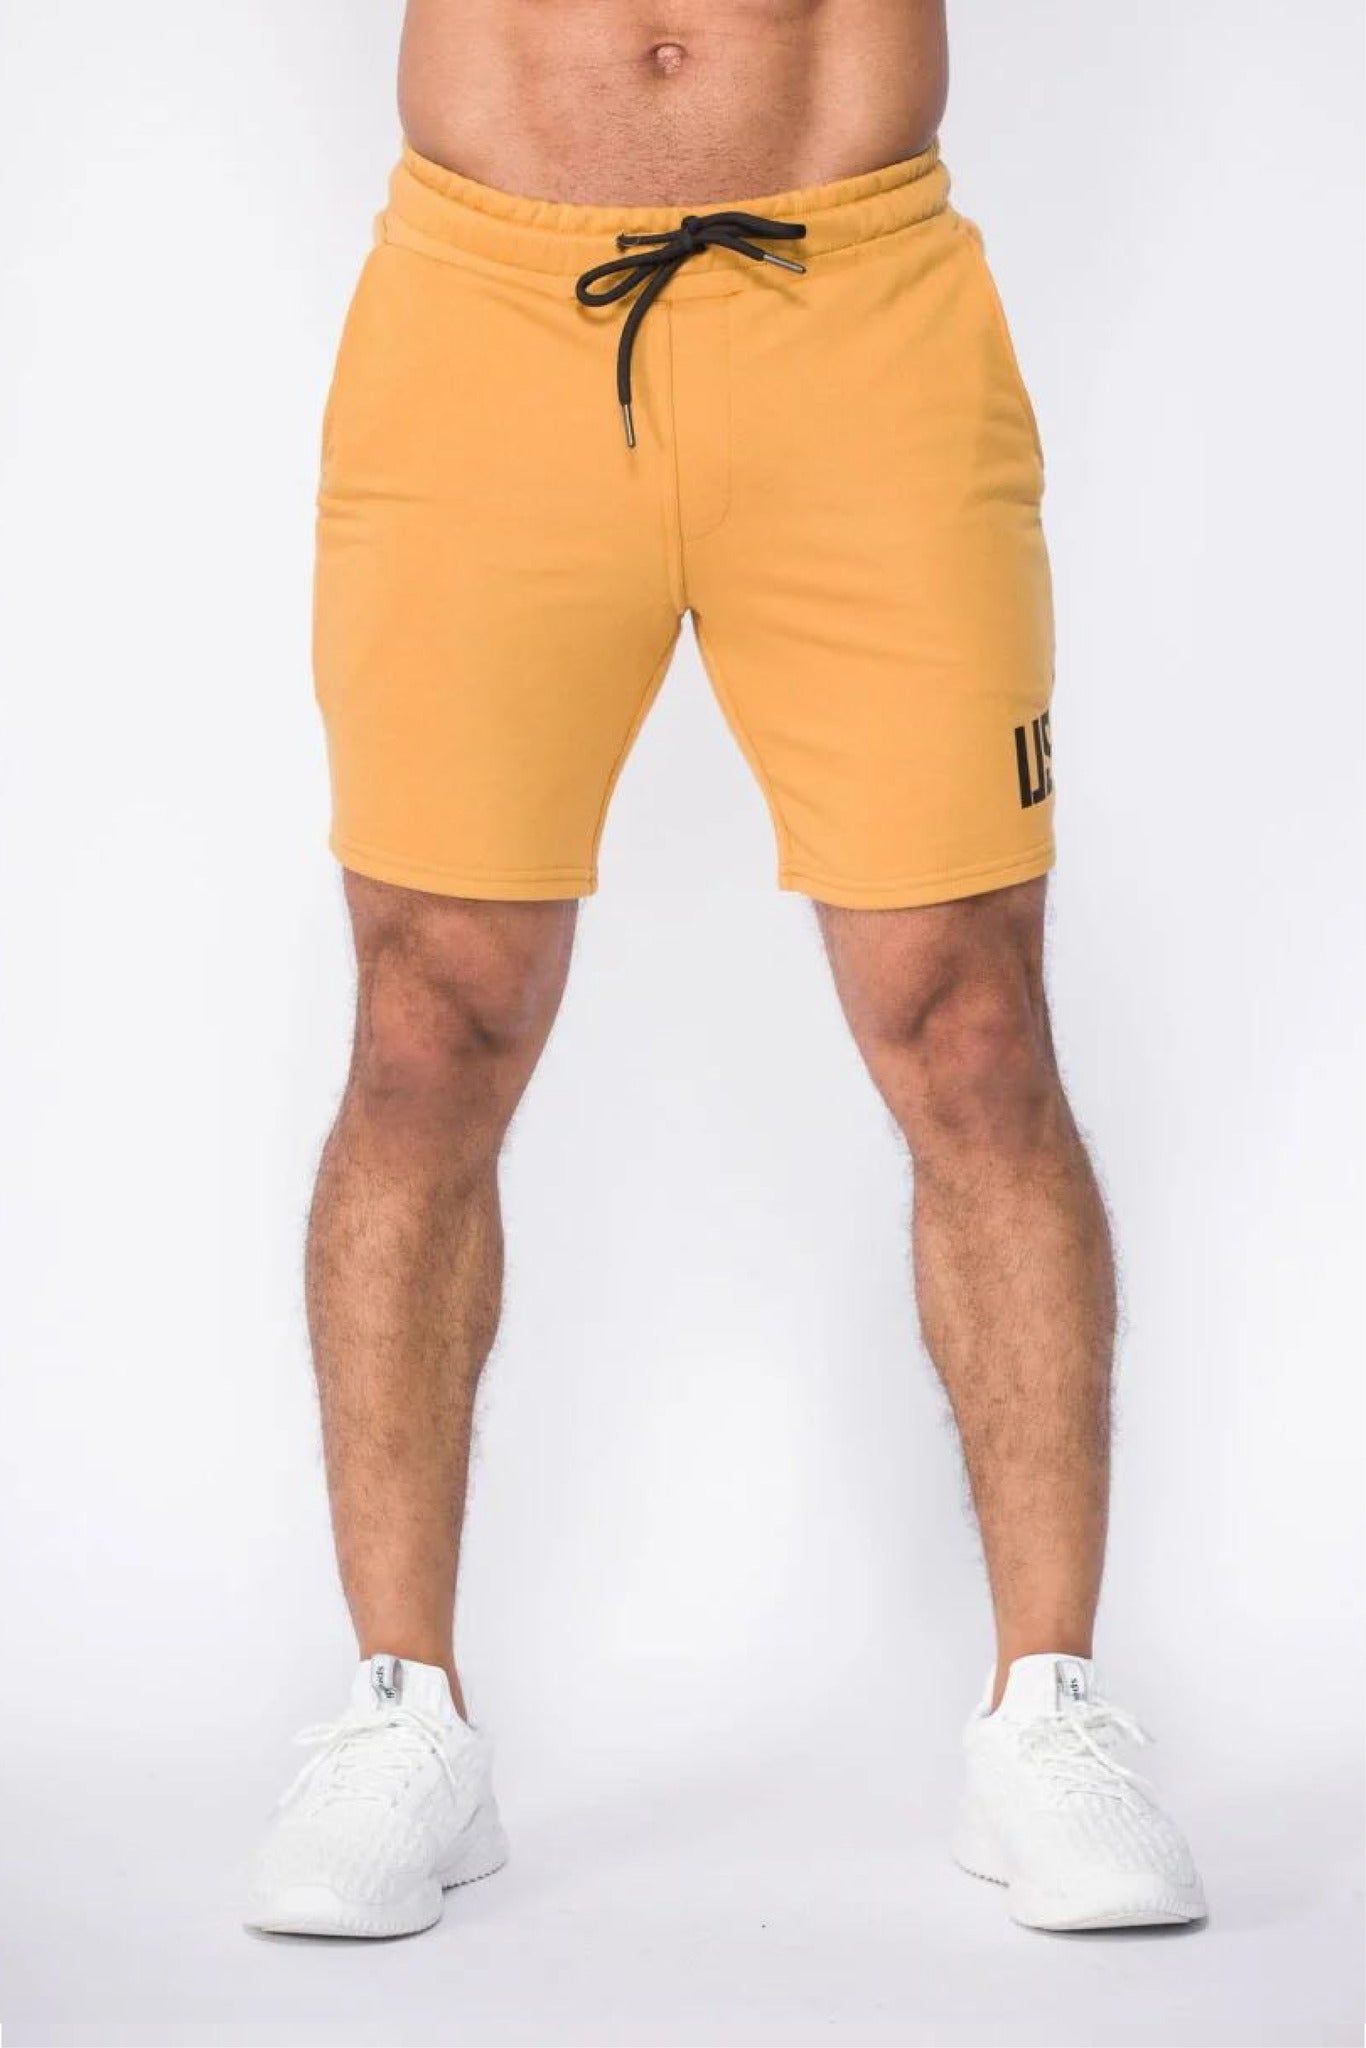 Pittsburgh yellow shorts